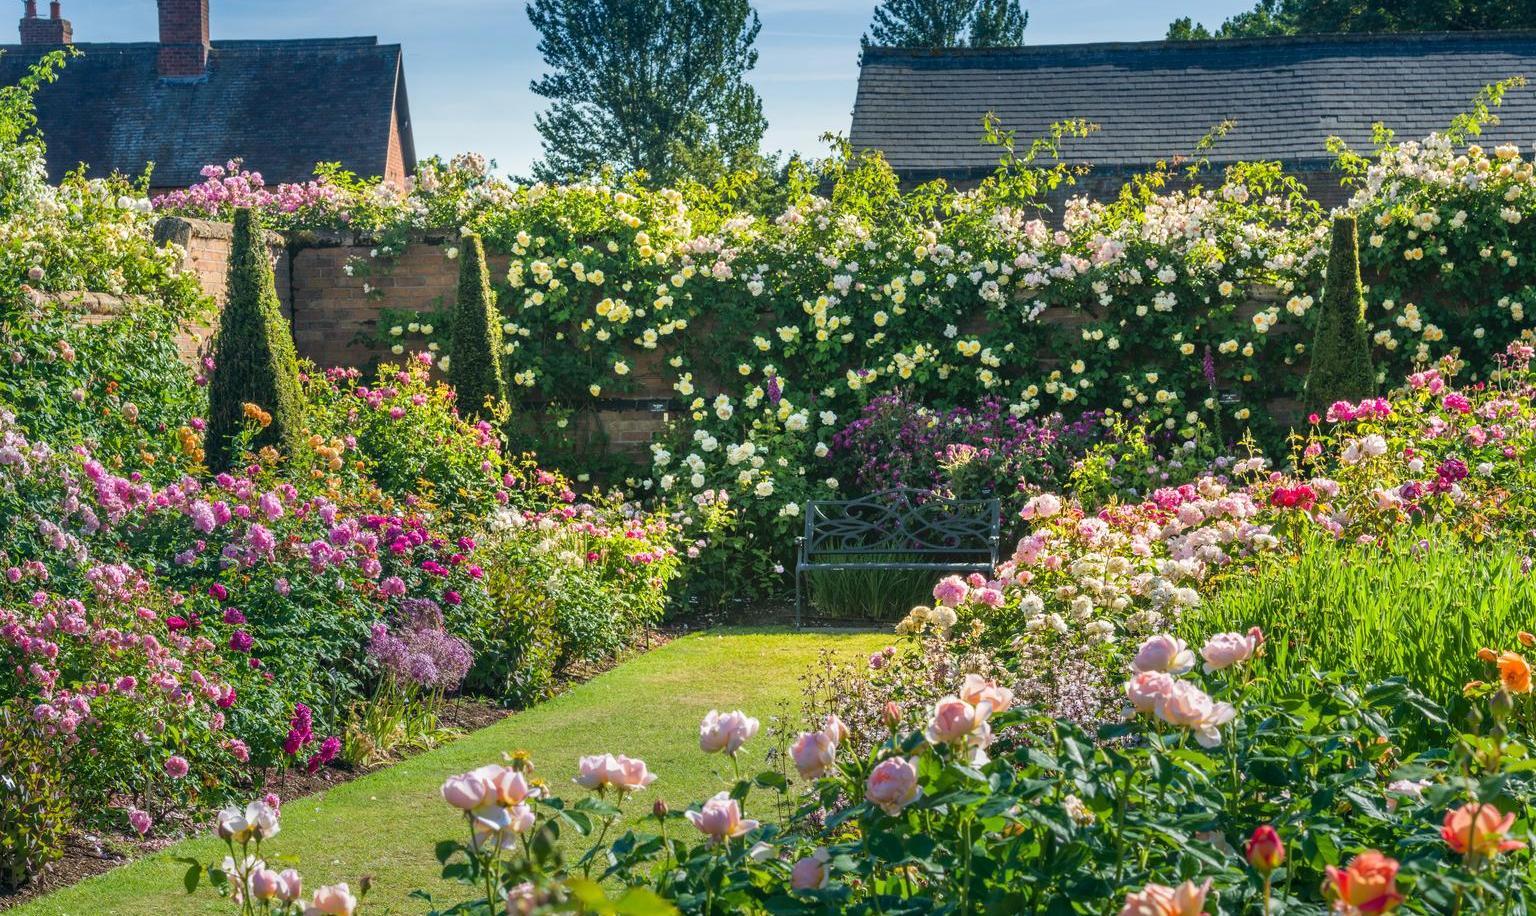 The English garden design - what shrubs to pick?